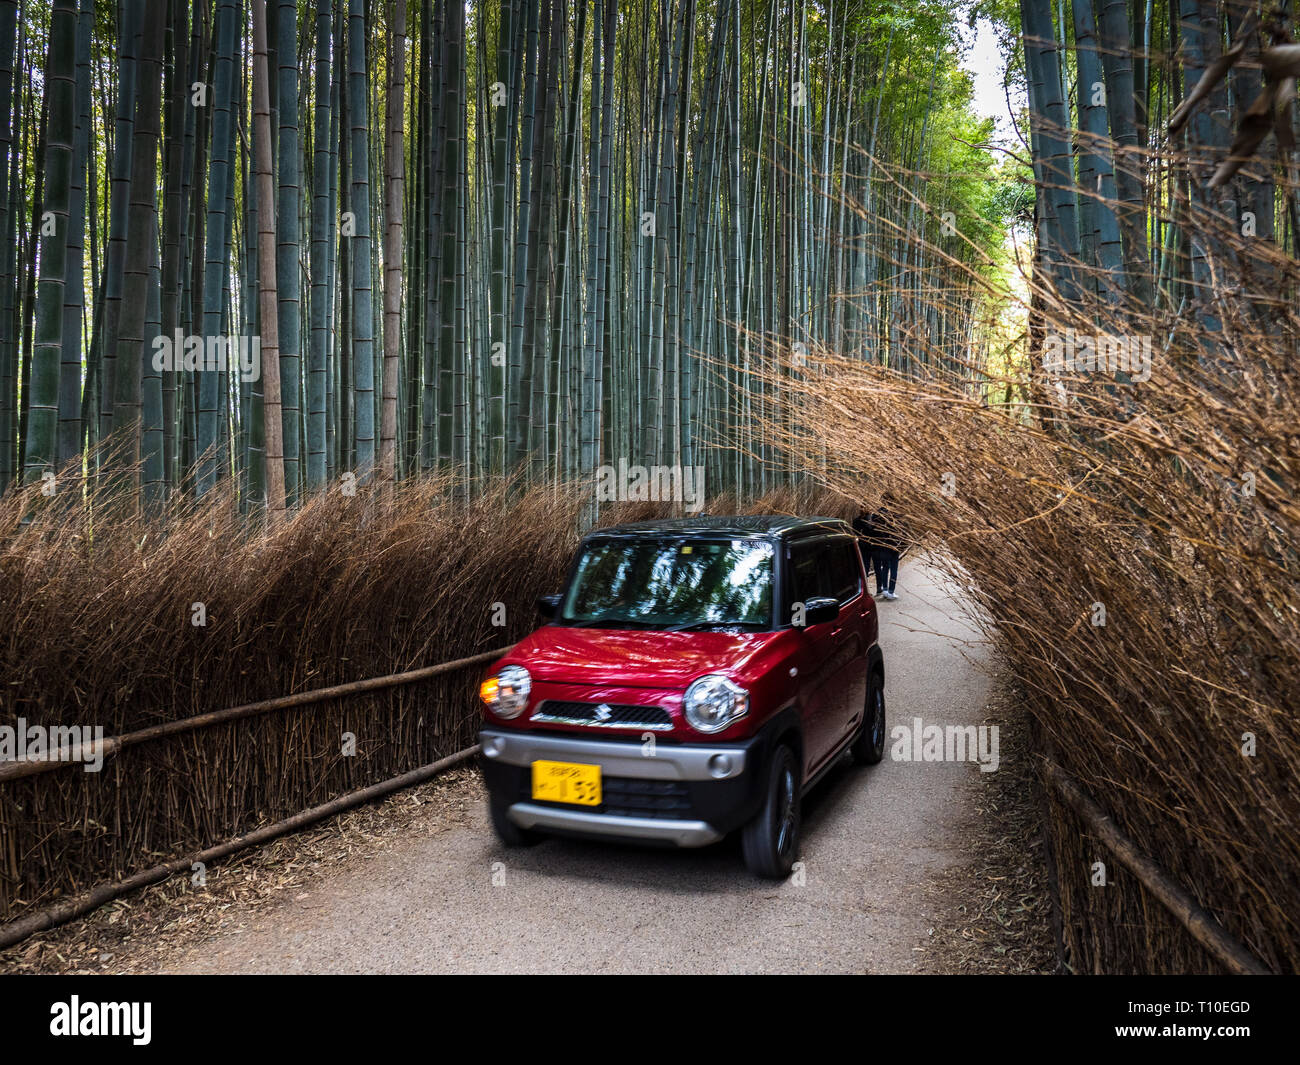 Japon Arashiyama Bamboo Grove - une petite voiture traverse la forêt de bambous d'Arashiyama près de Kyoto Japon Banque D'Images